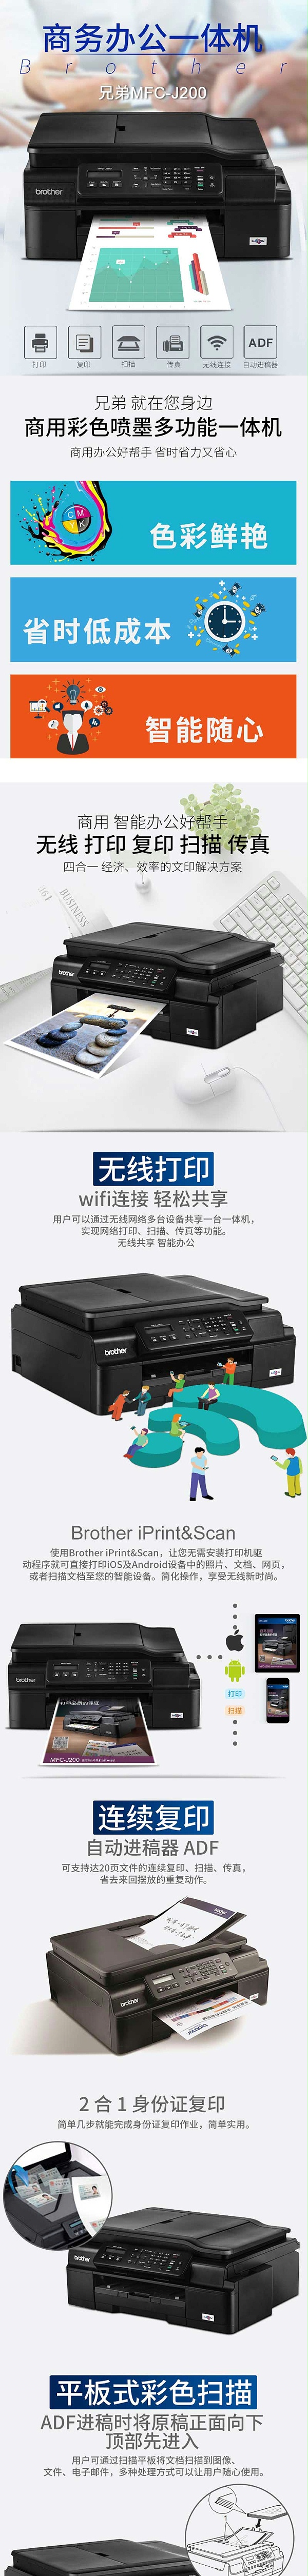 兄弟 MFC-J200 商用彩色喷墨多功能一体机打印复印扫描传真机 照片相片无线WIFI网络打印办公 官方标配 注册2年保